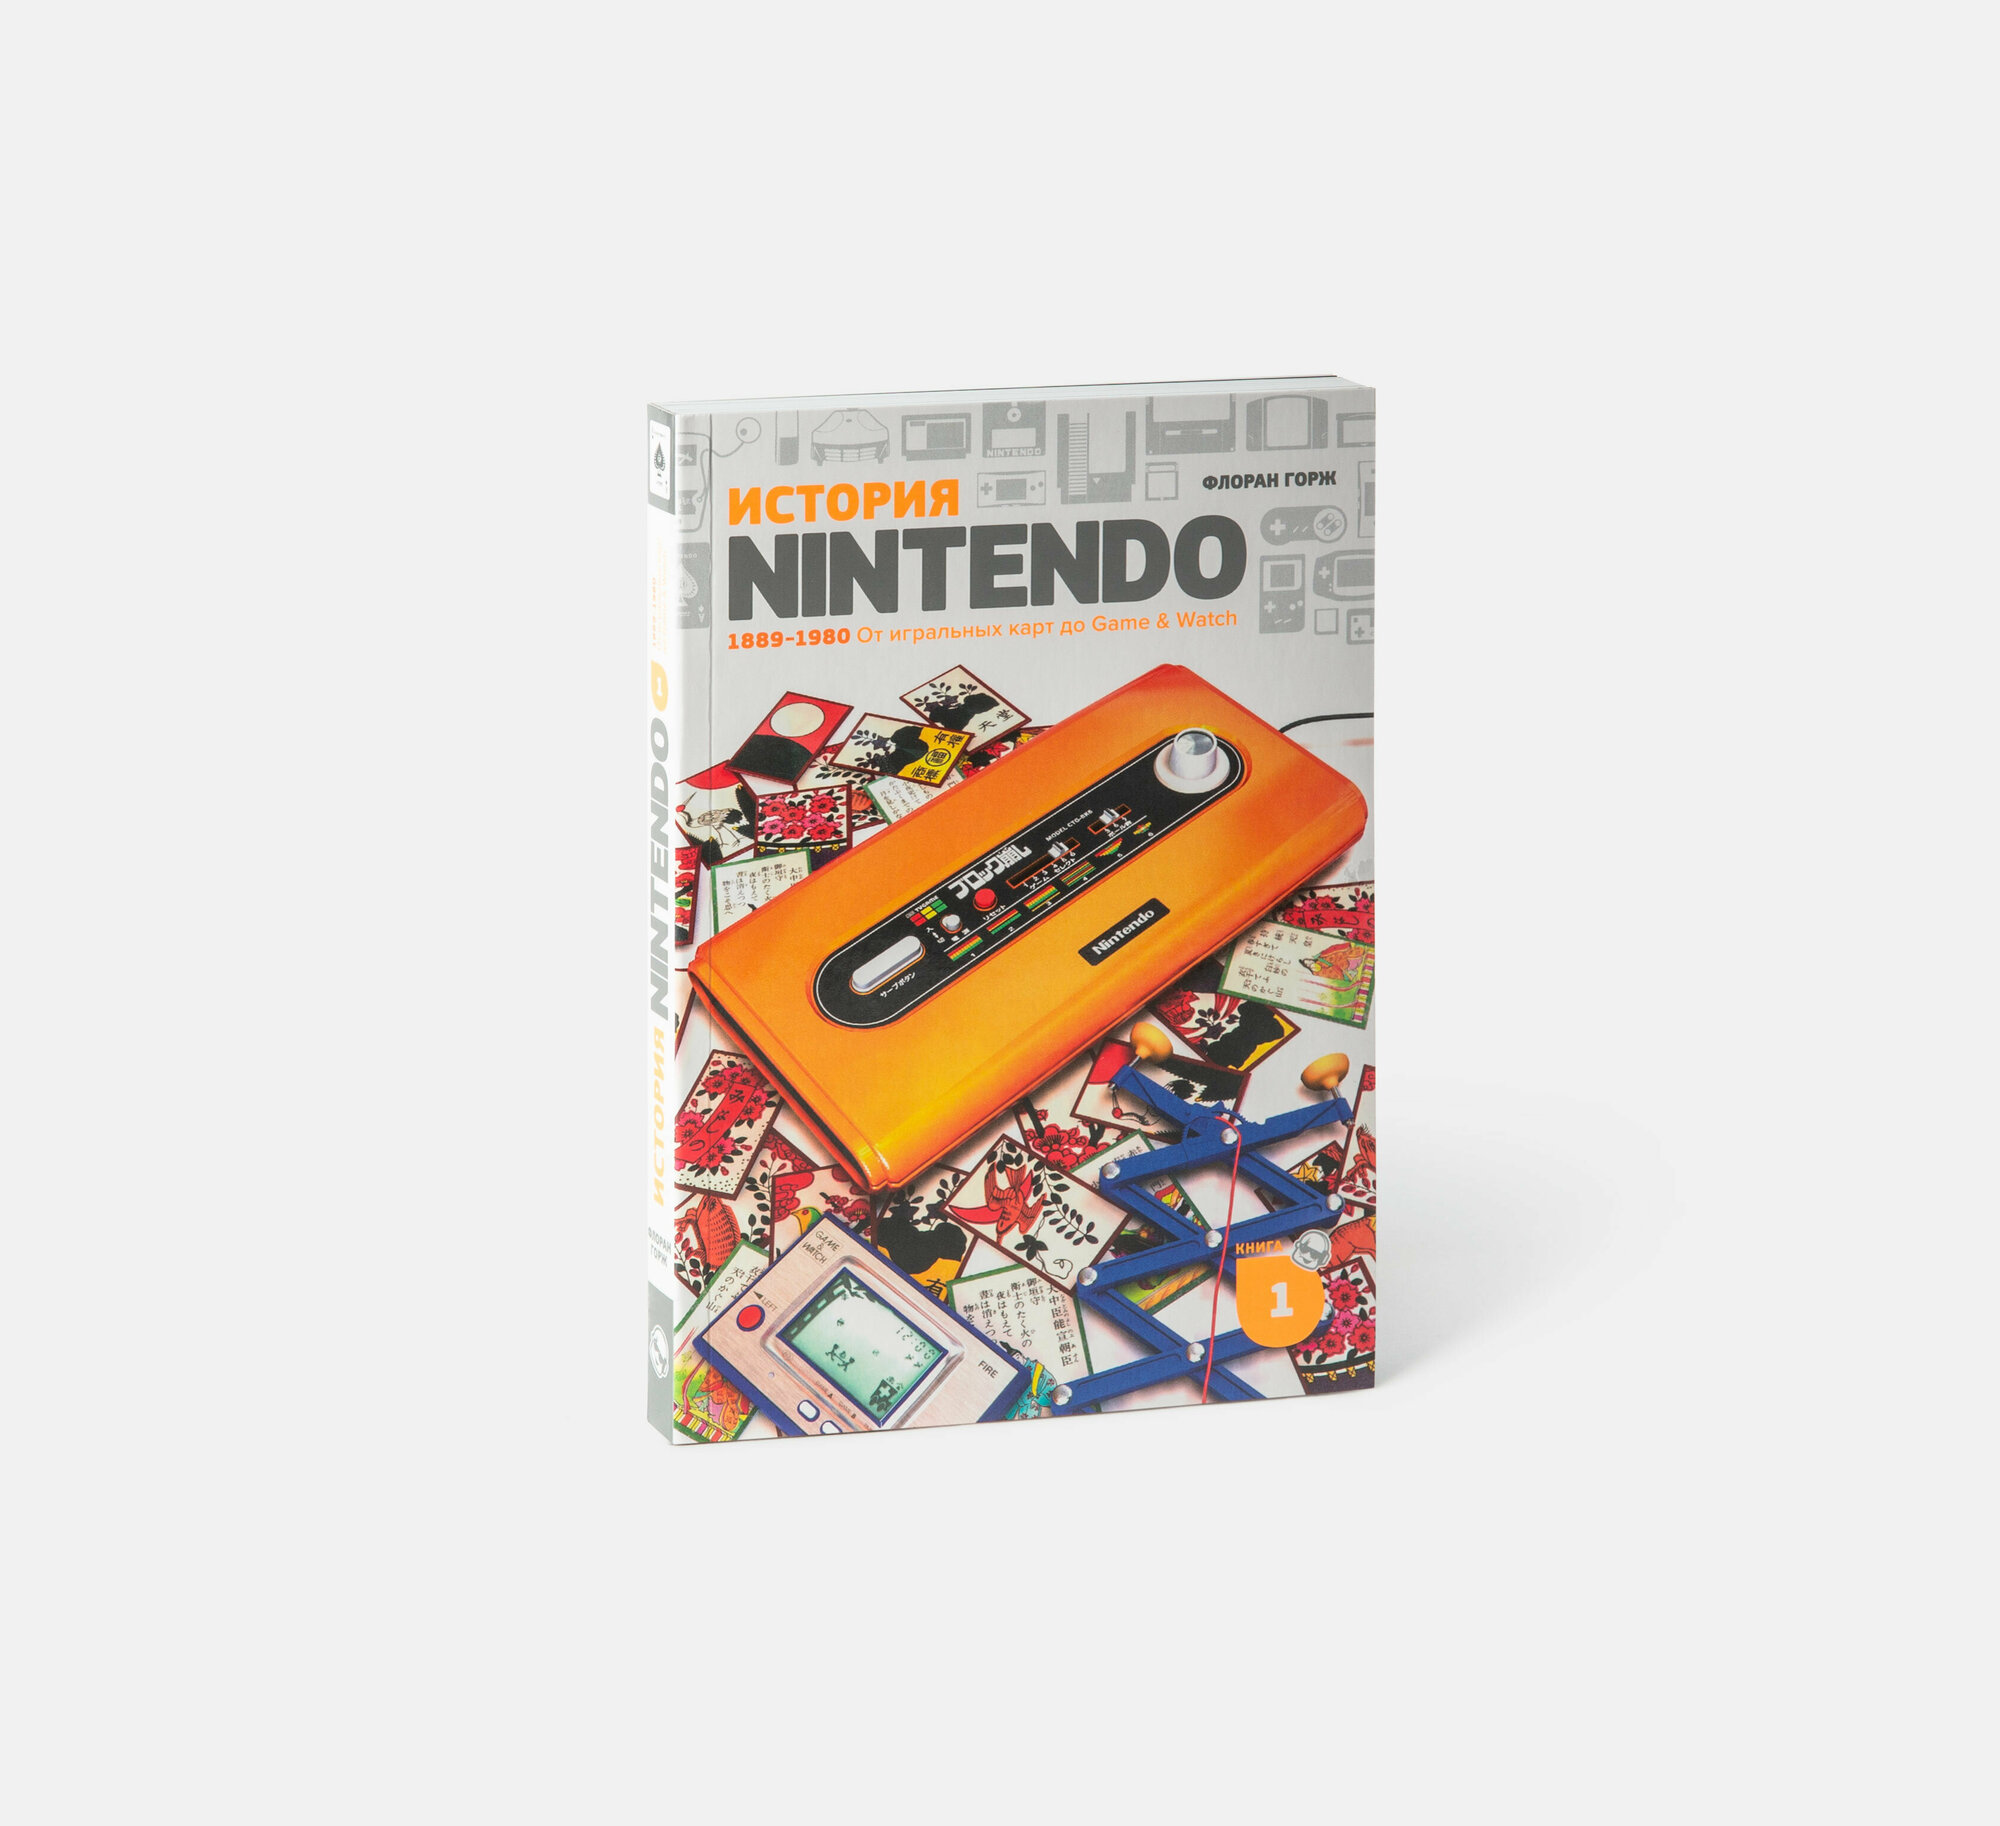 Флоран Горж «История Nintendo 1889-1980. Game&Watch», книга 1